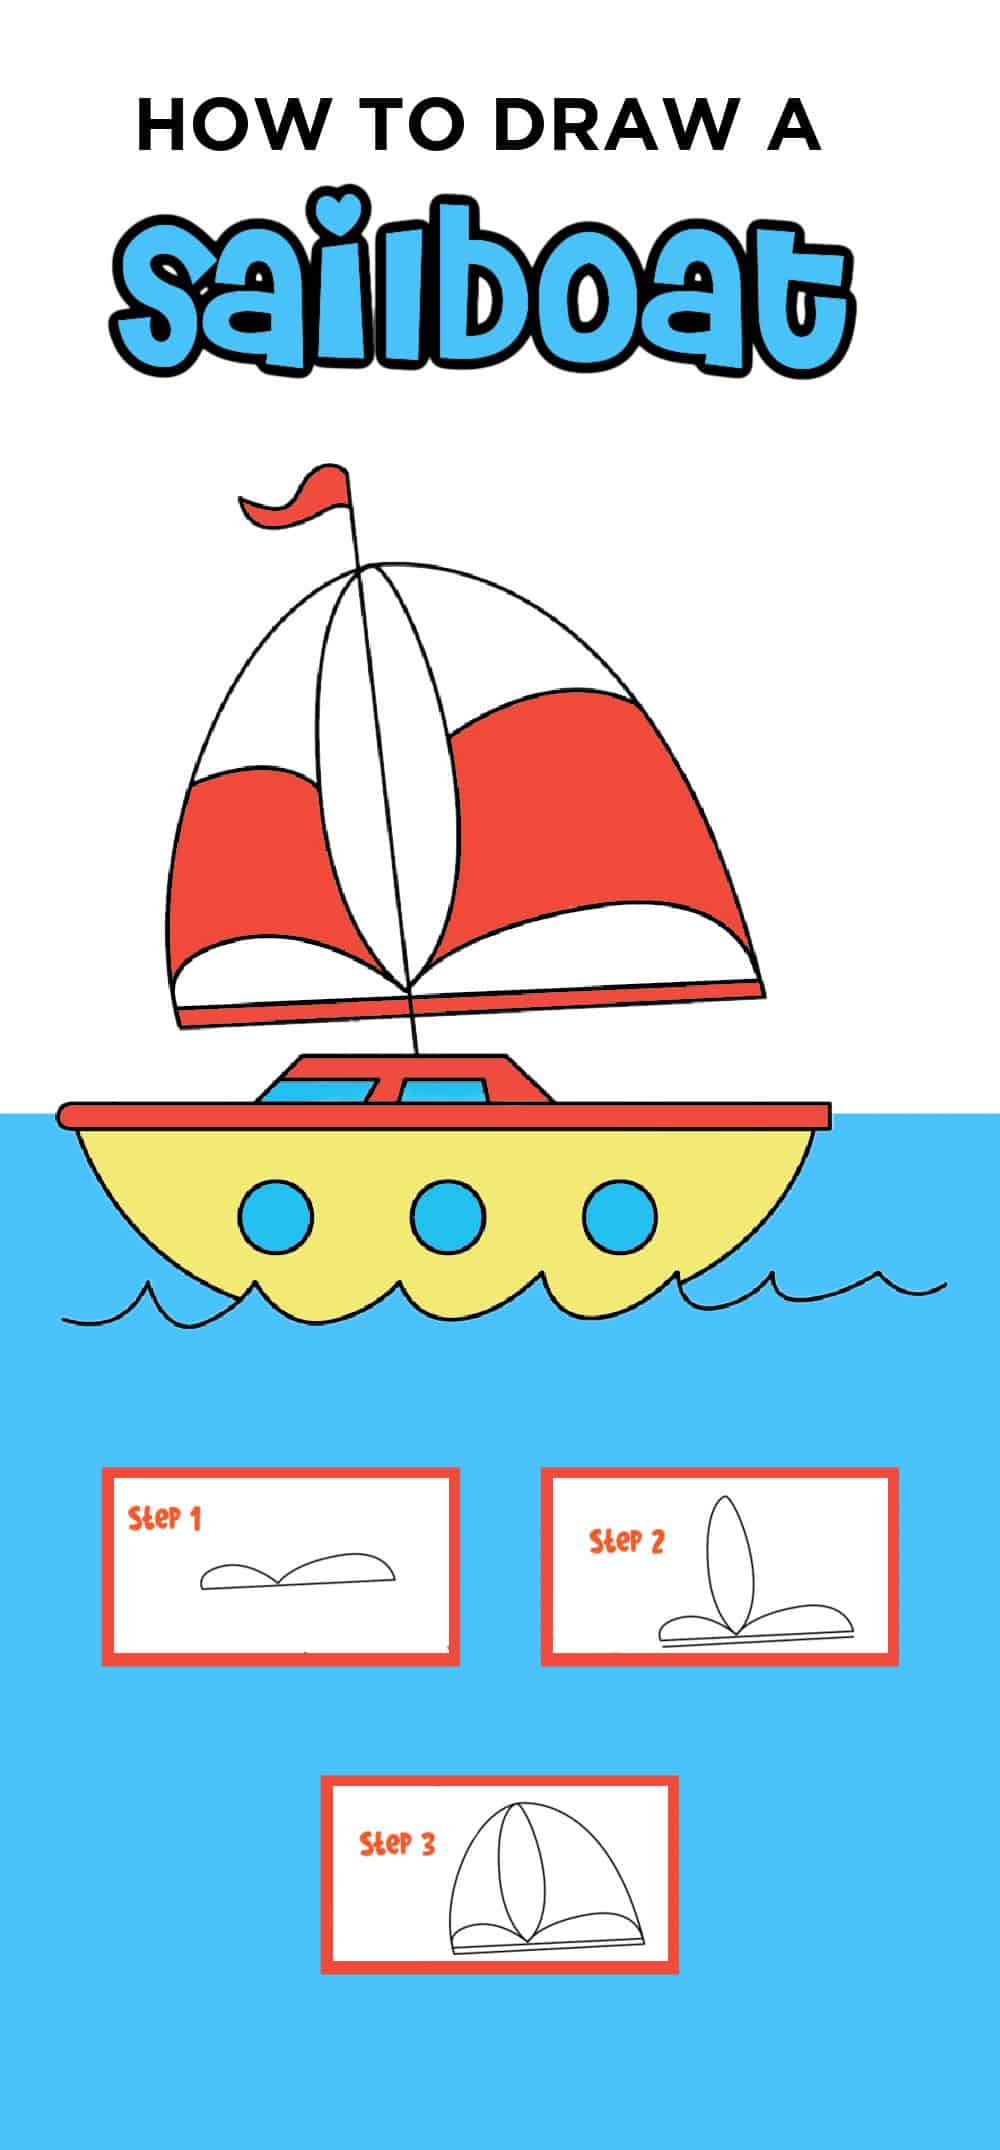 Drawing a Sailboat